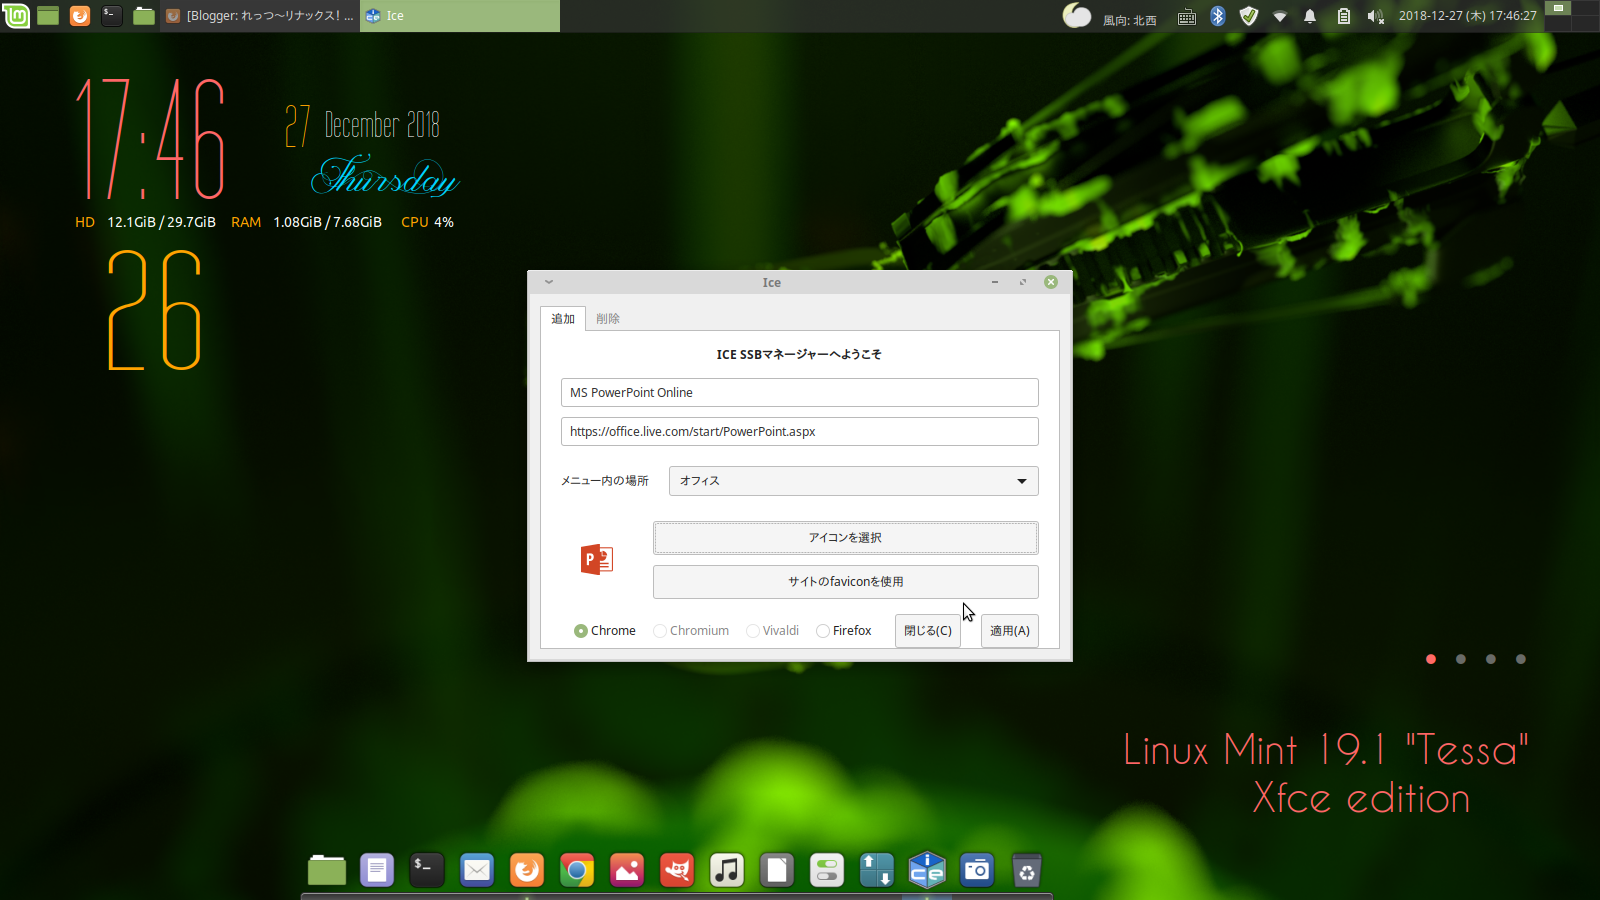 Операционная система на c. Линукс минт 19. Linux Mint XFCE Edition. Linux Mint 19 XFCE Edition. Интерфейс Linux Mint XFCE.